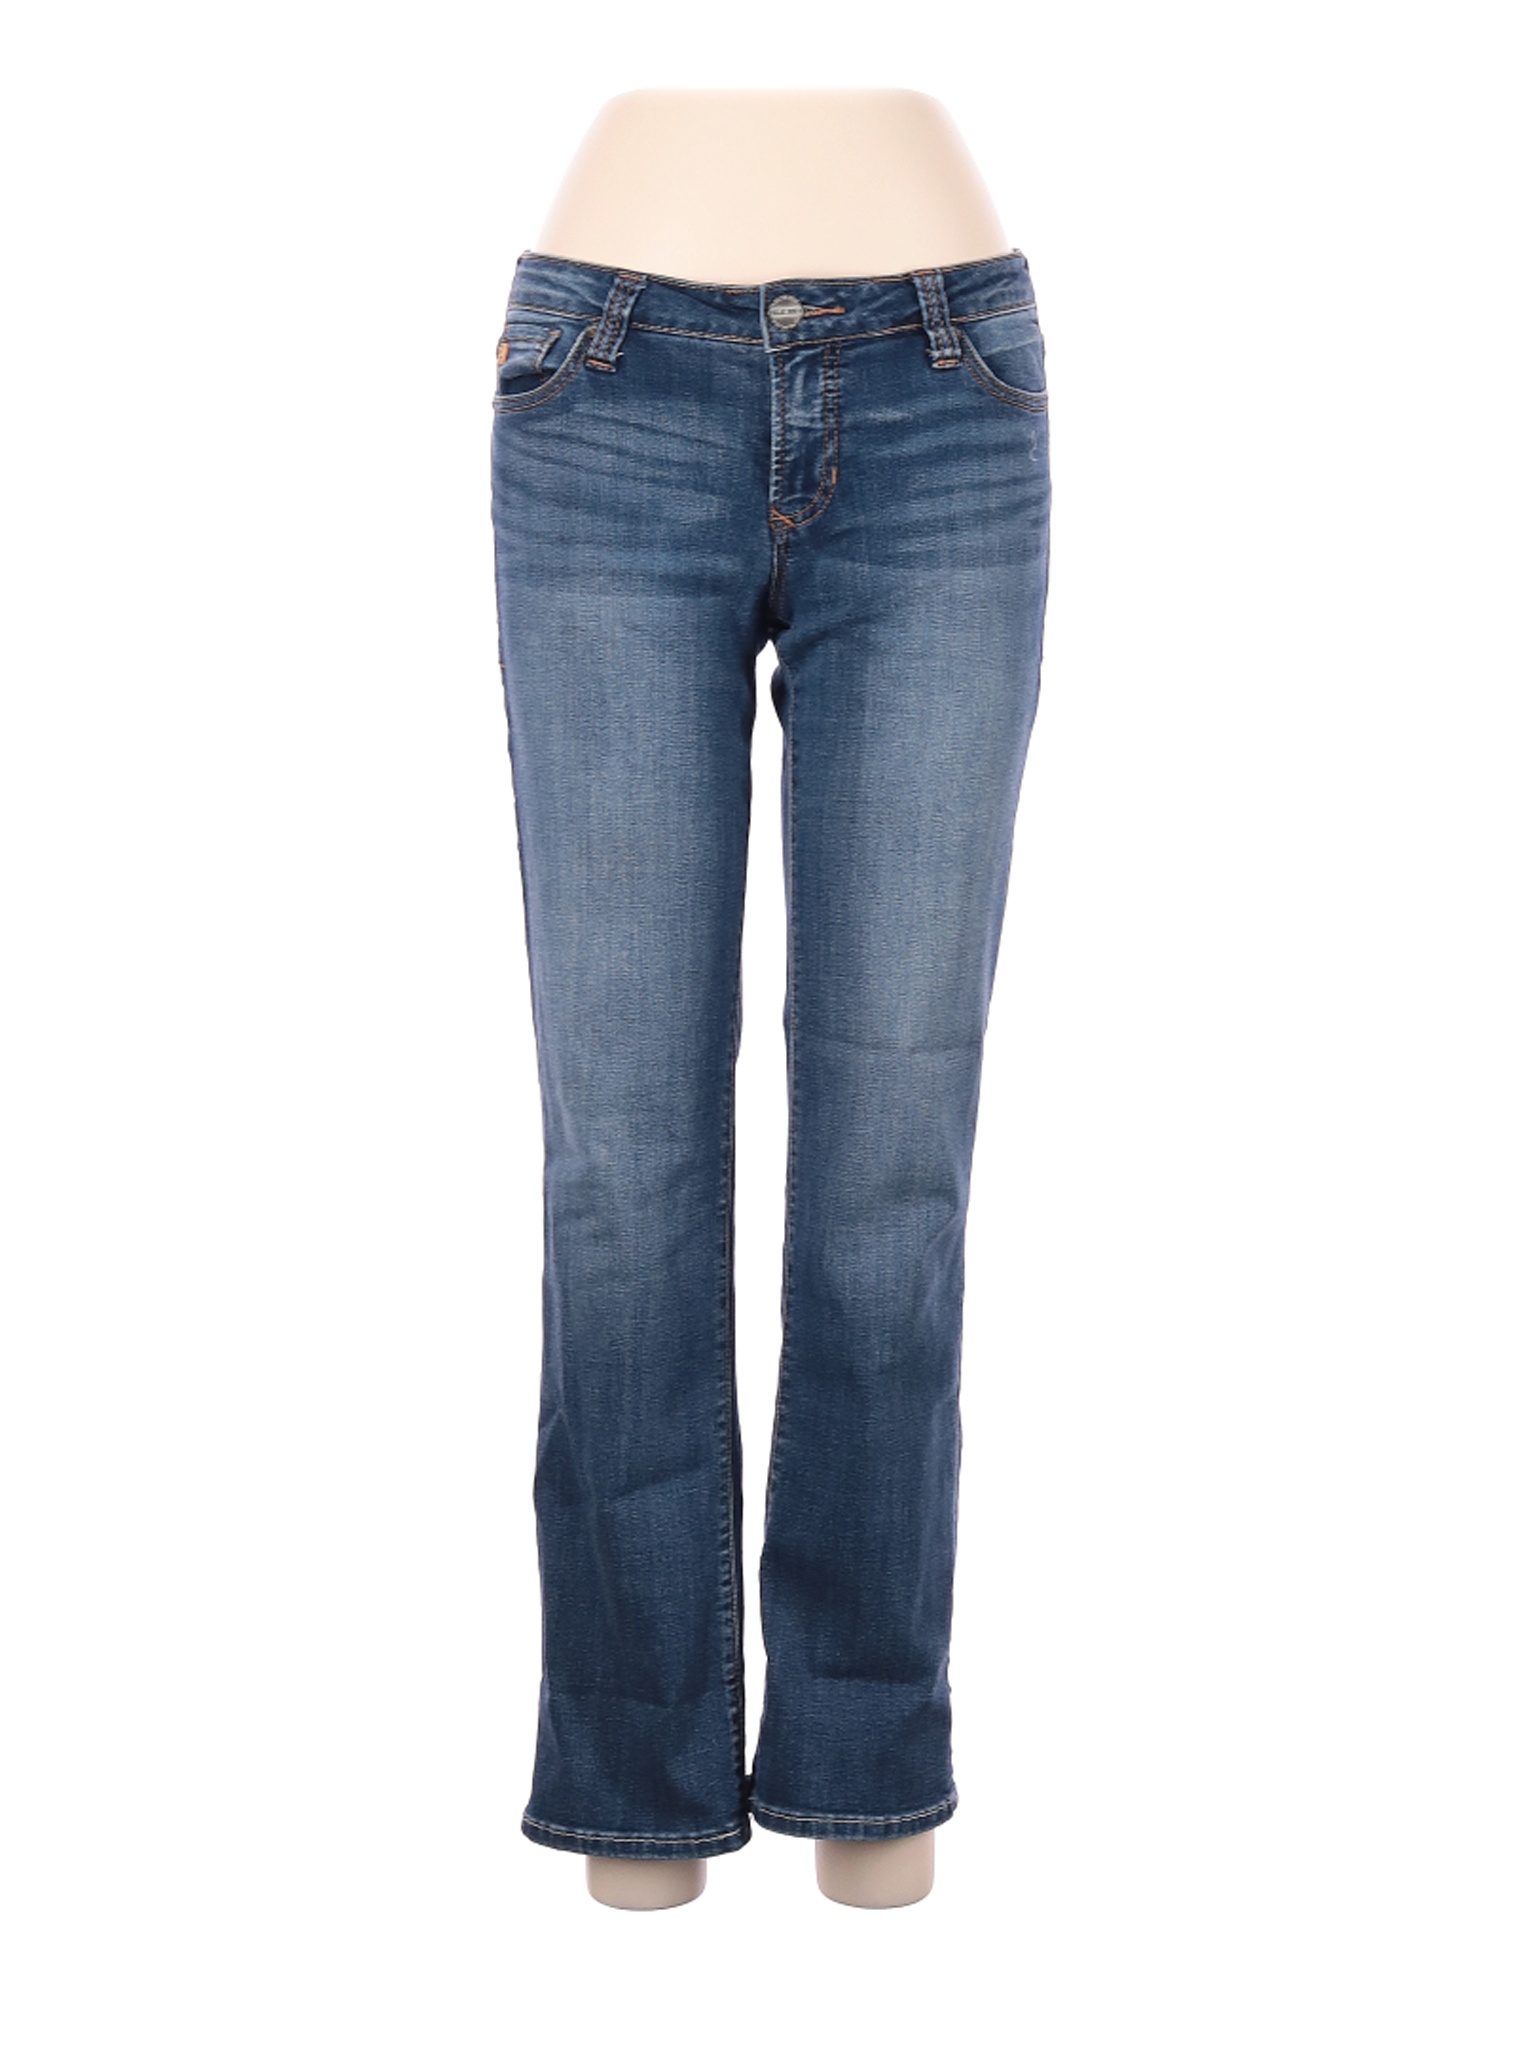 Dear John Women Blue Jeans 28W | eBay